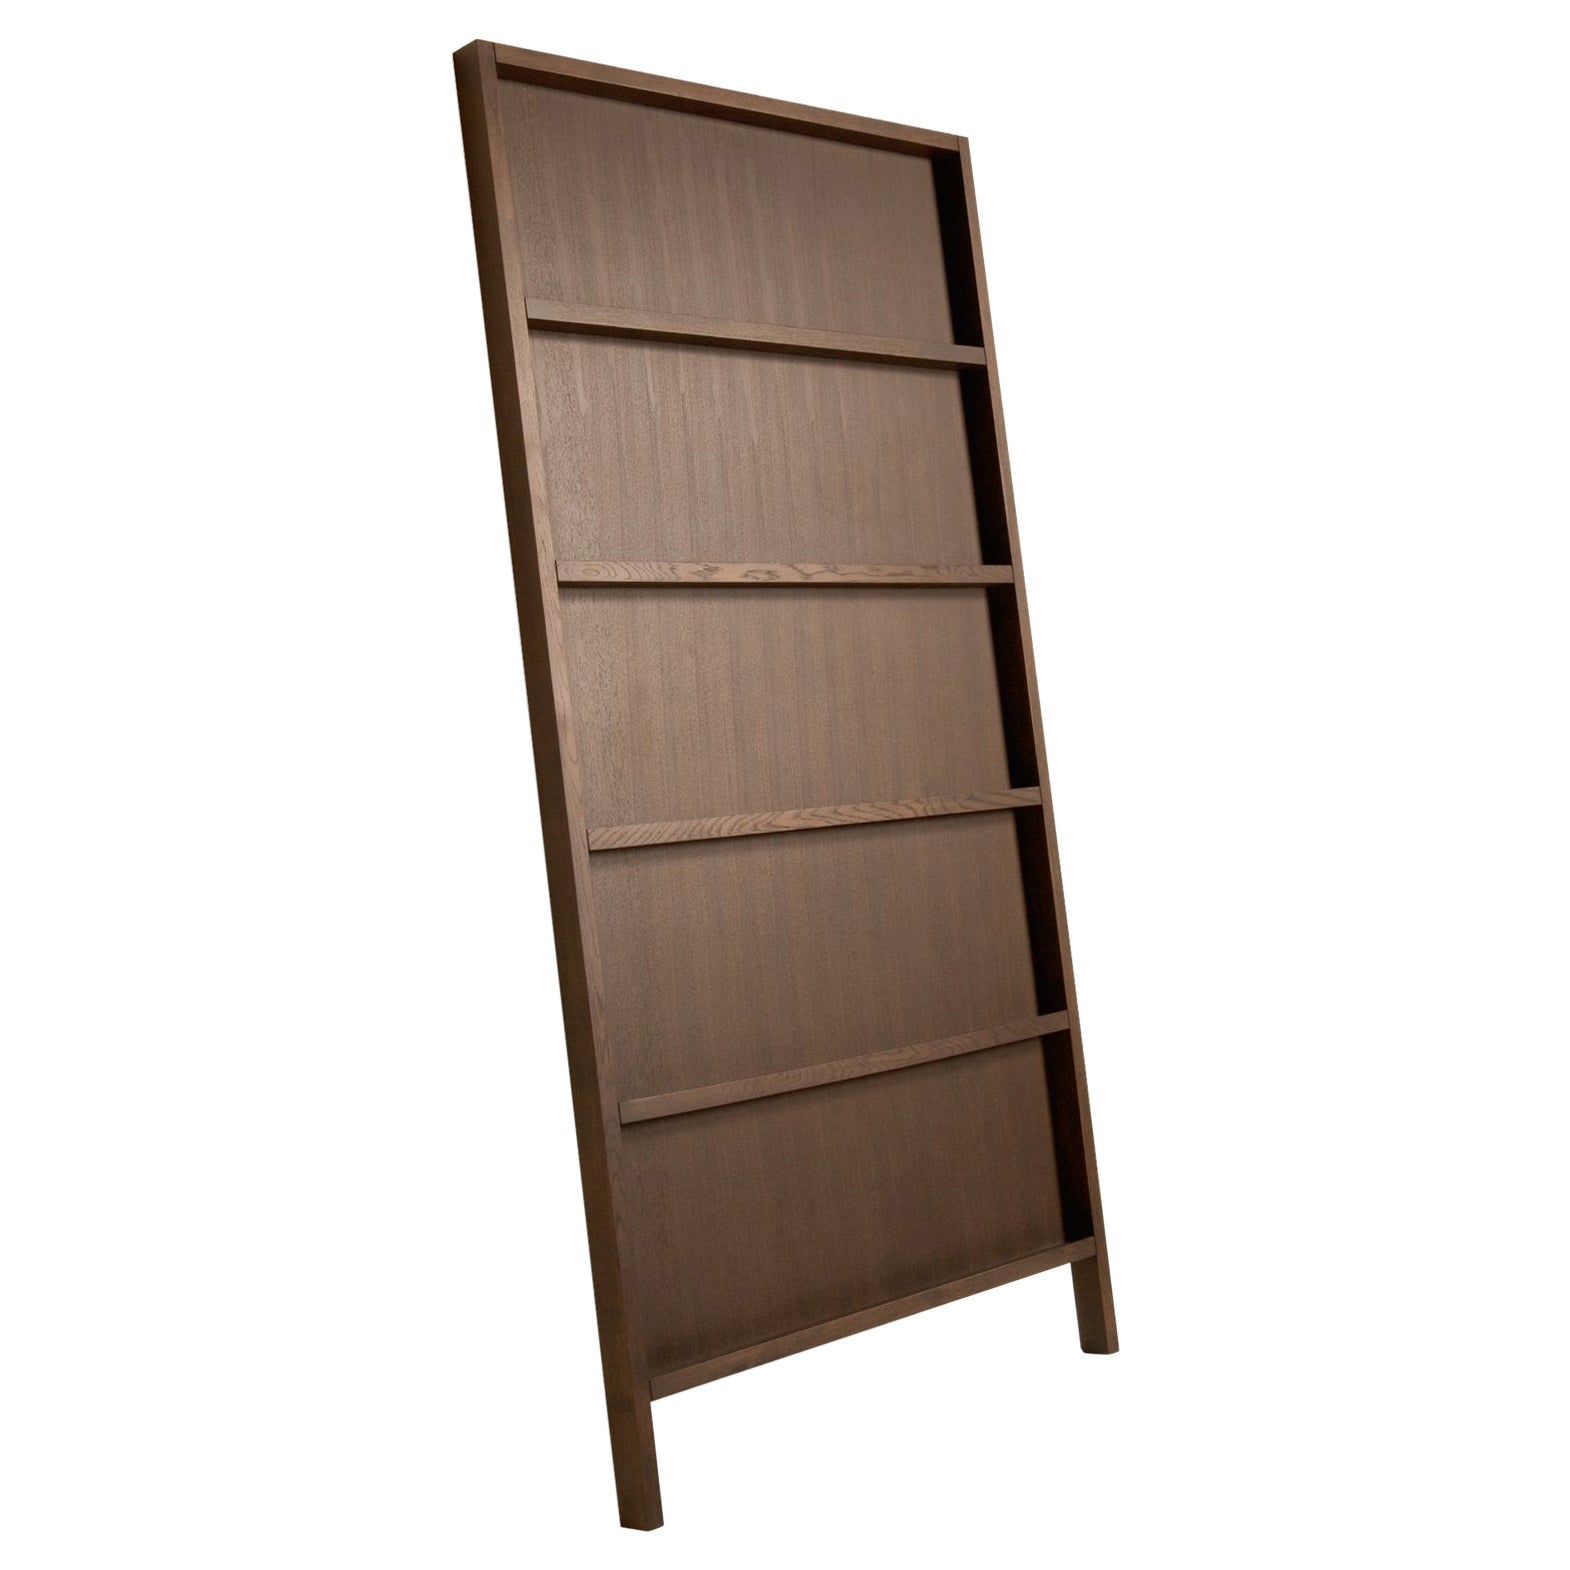 Moooi Oblique Small Cupboard/Wall Shelf in Cinnamon Stained Oak For Sale